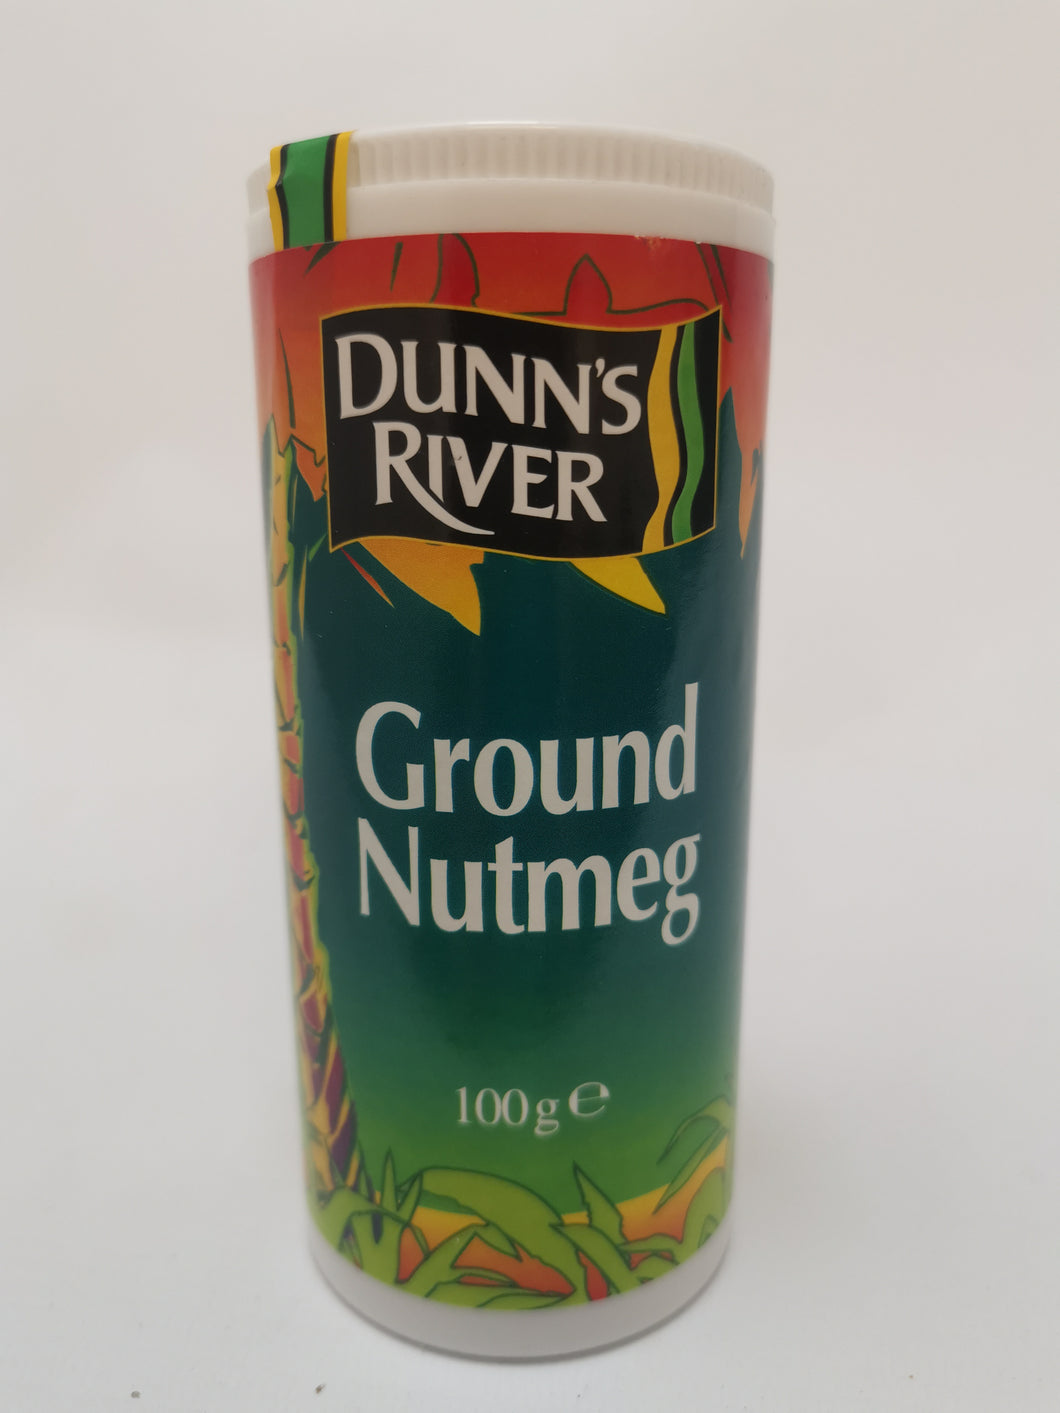 Dunn's River Ground Nutmeg 100g